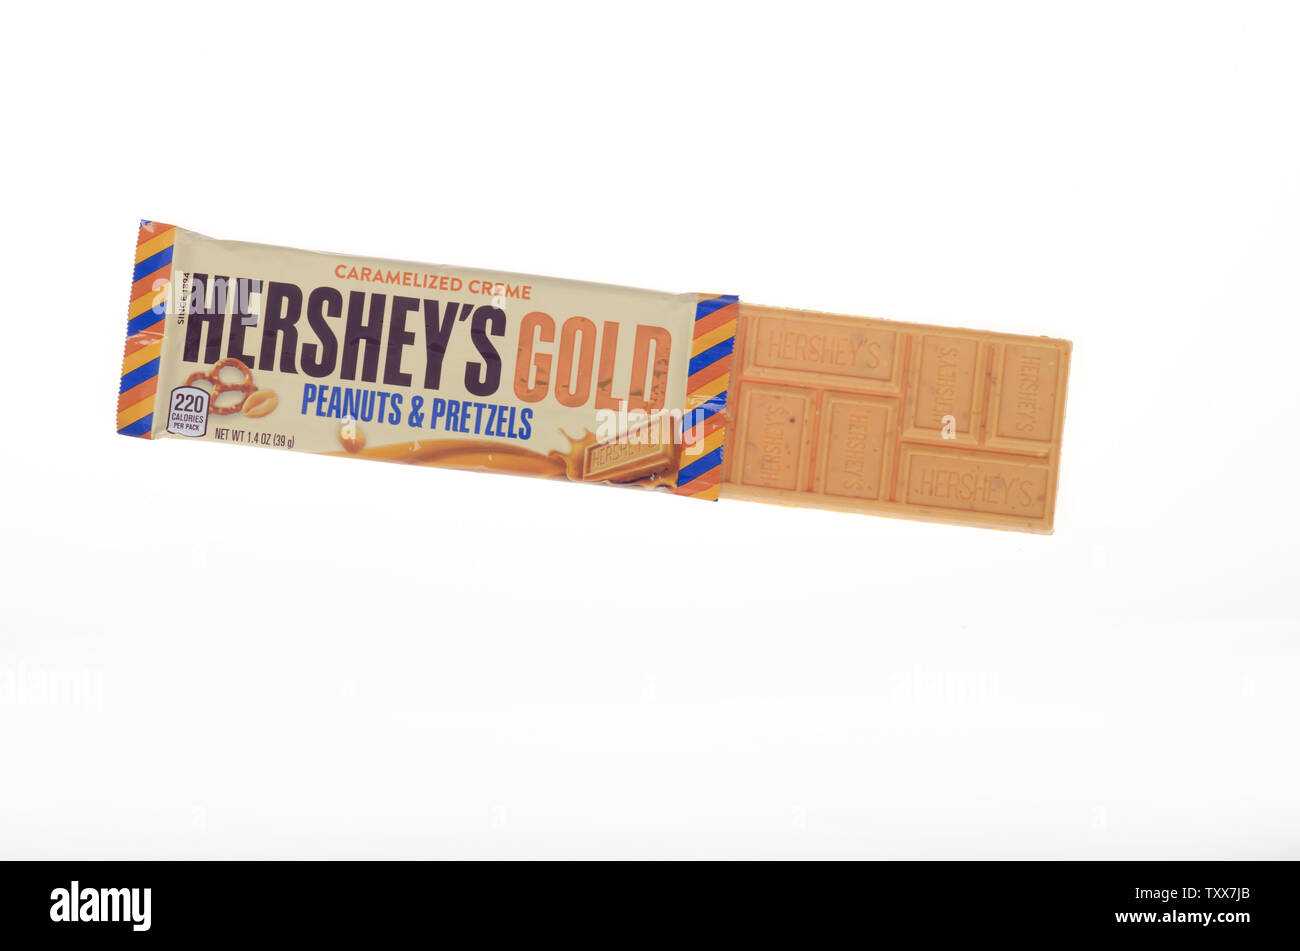 Hershey's Gold peanuts & bretzels avec candy bar ouvert de l'enrubanneuse Banque D'Images